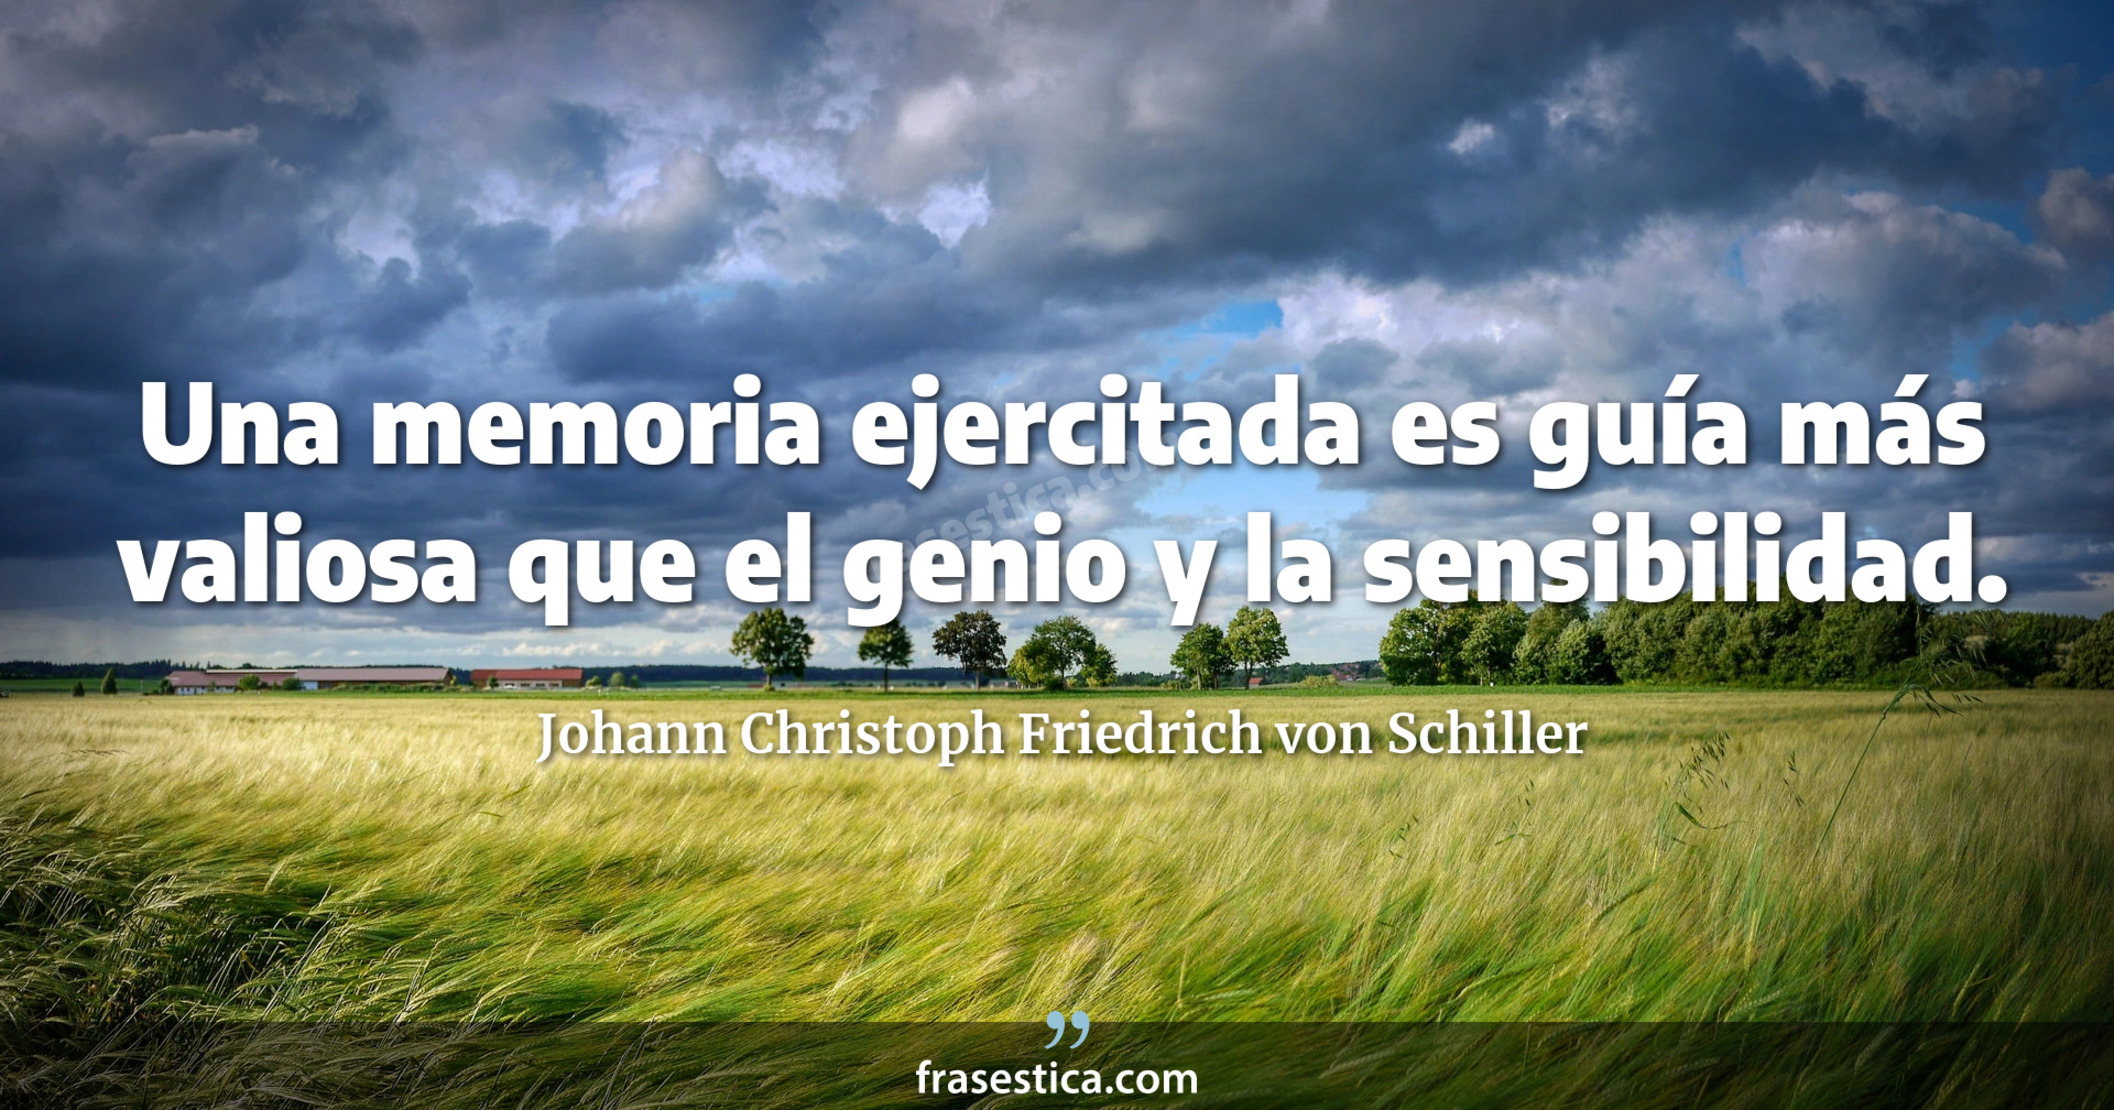 Una memoria ejercitada es guía más valiosa que el genio y la sensibilidad. - Johann Christoph Friedrich von Schiller